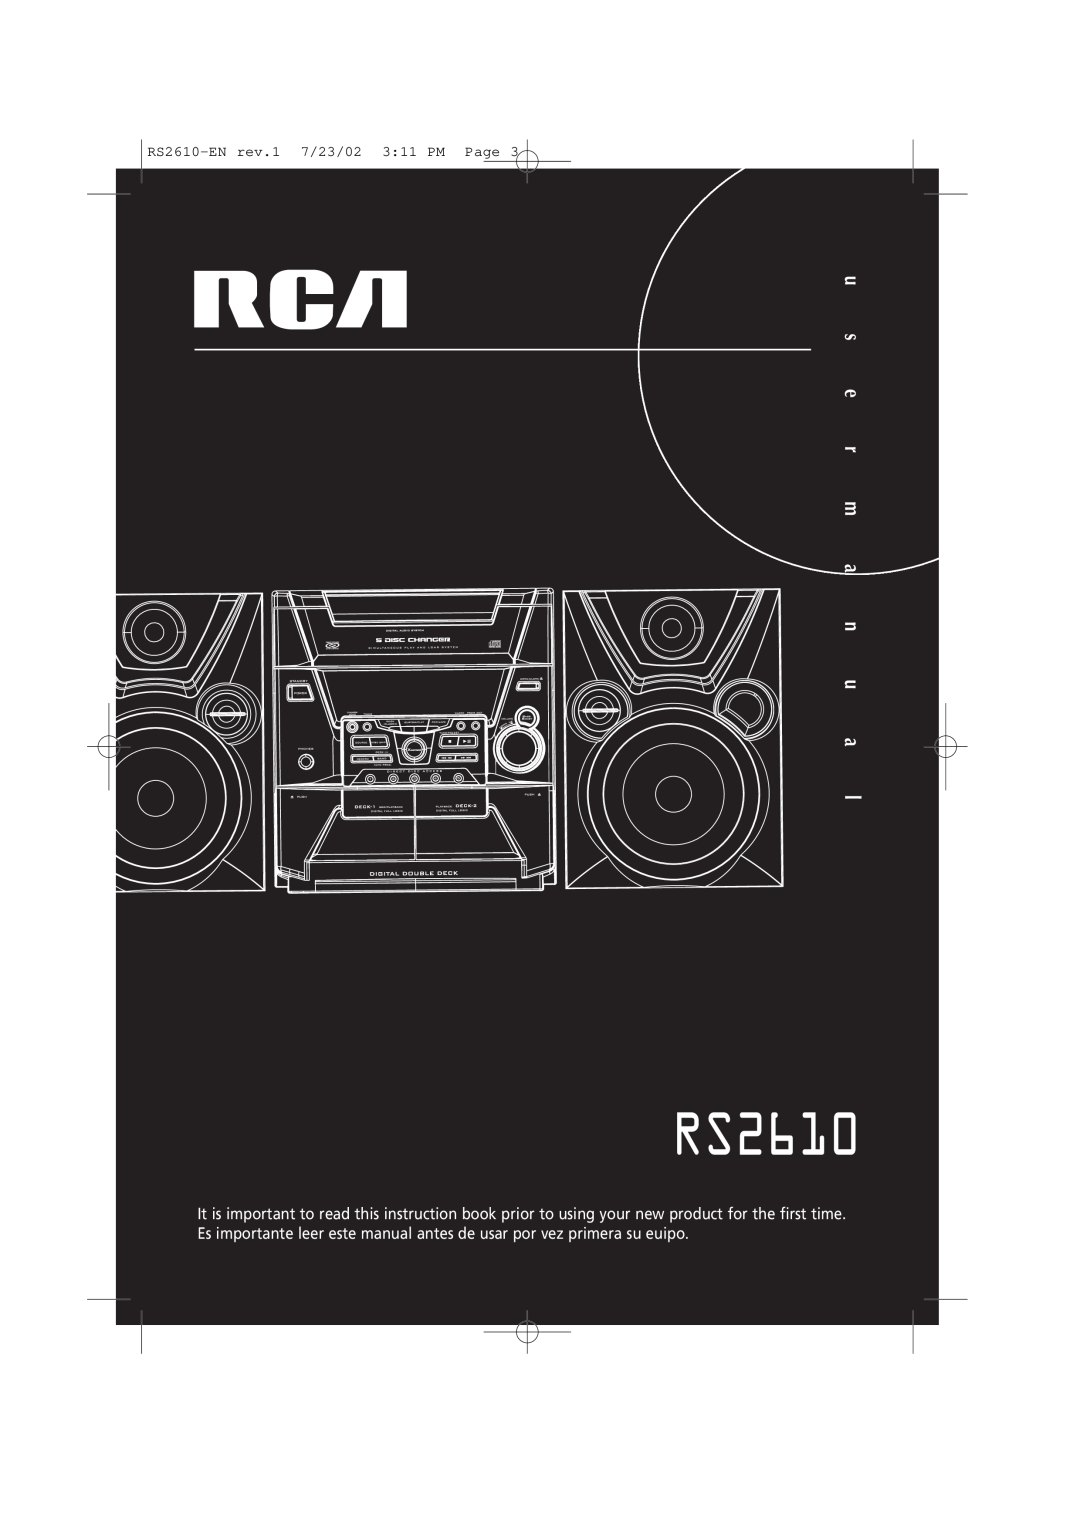 RCA manual u s e r m a n u a, RS2610-ENrev.1 7/23/02 3 11 PM Page 